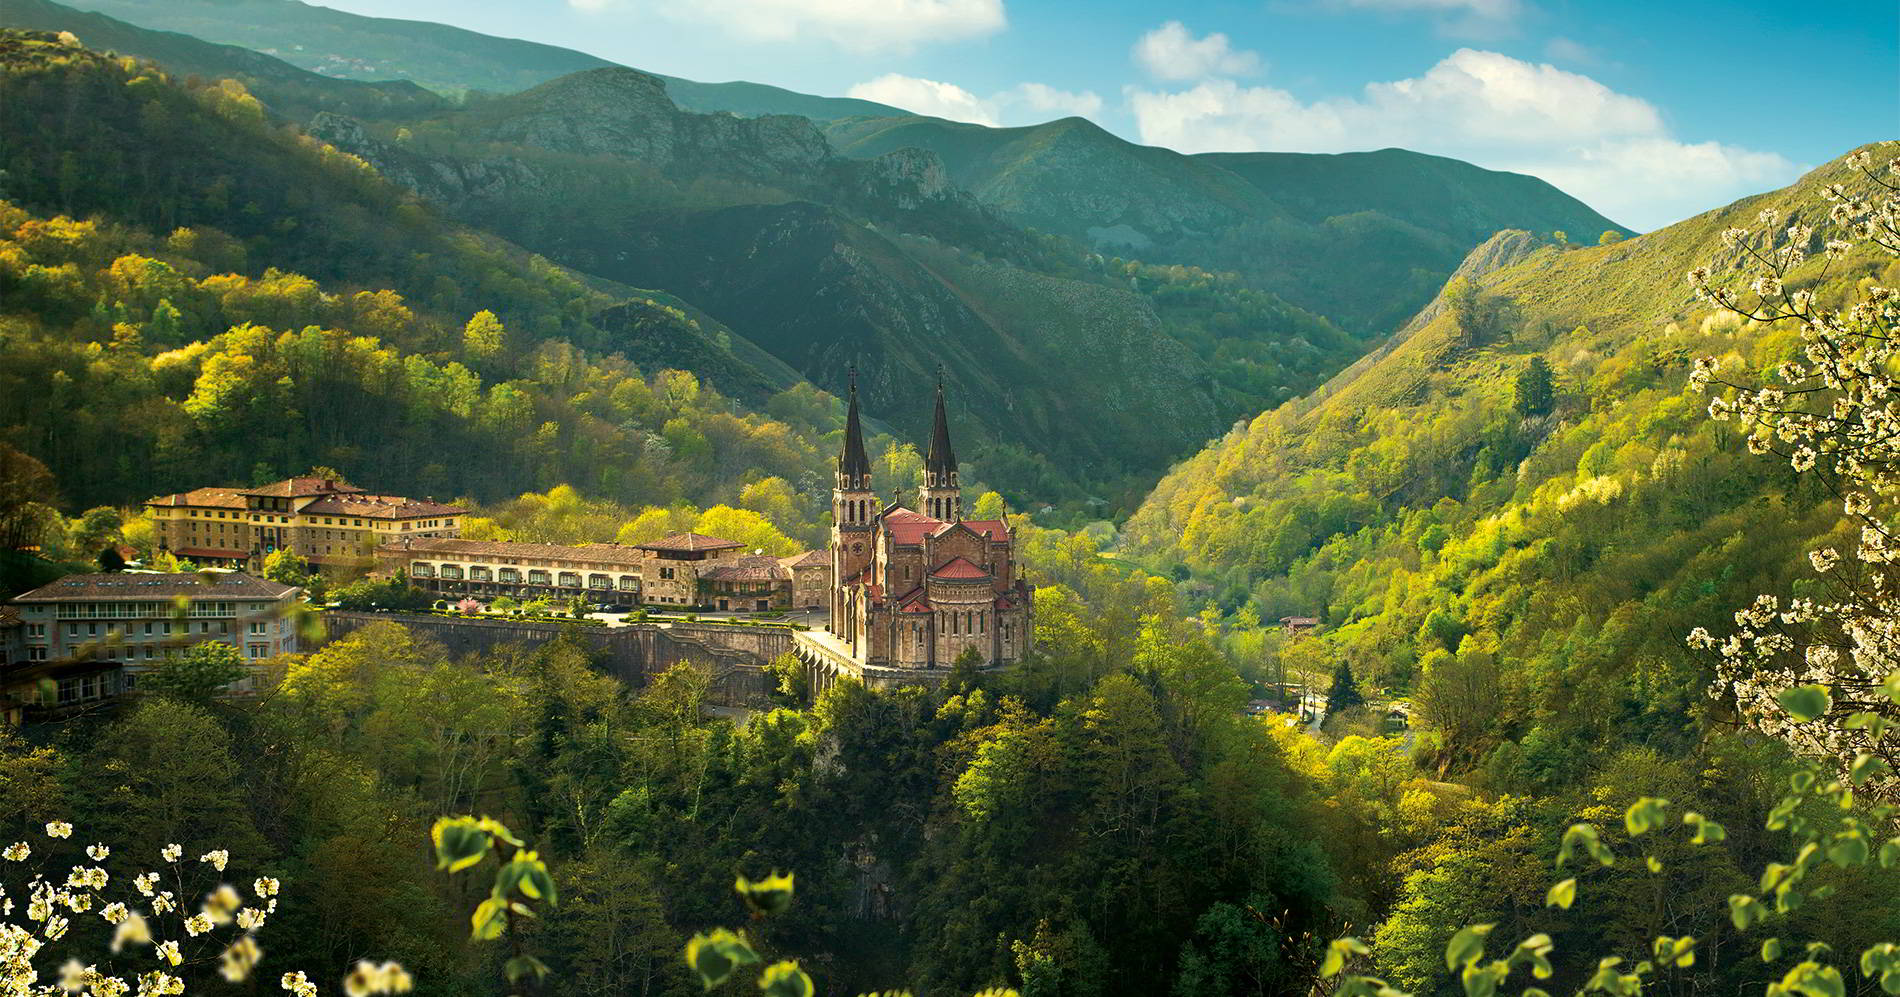 Limitaciones en el acceso al Real Sitio de Covadonga y a los Lagos de Covadonga

